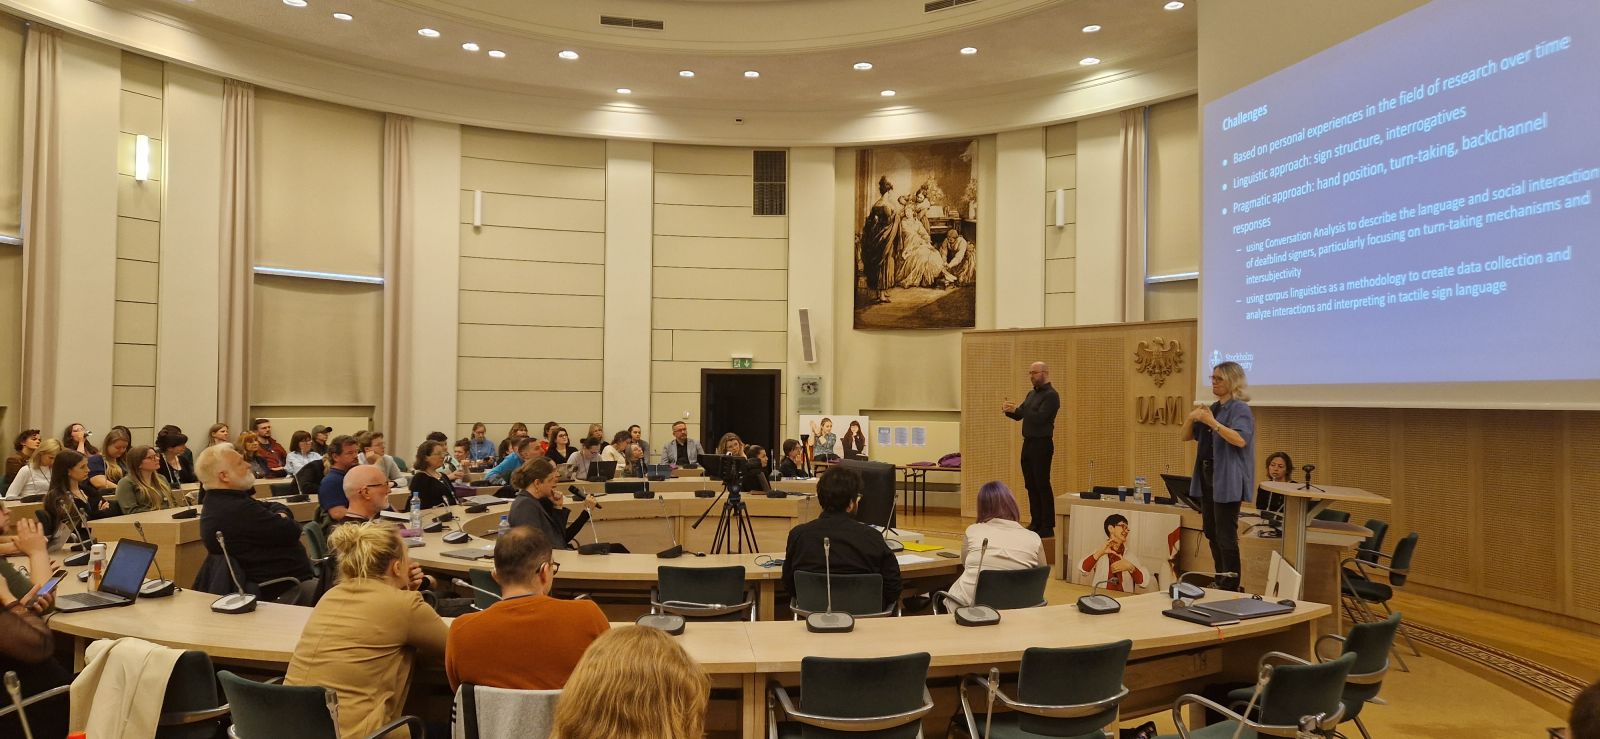 W Salonie Mickiewicza zgromadzeni są uczestnicy konferencji o języku migowym, przy stole prezydialnym na podwyższeniach stoją tłumacze na polski i uniwersalny język migowy.